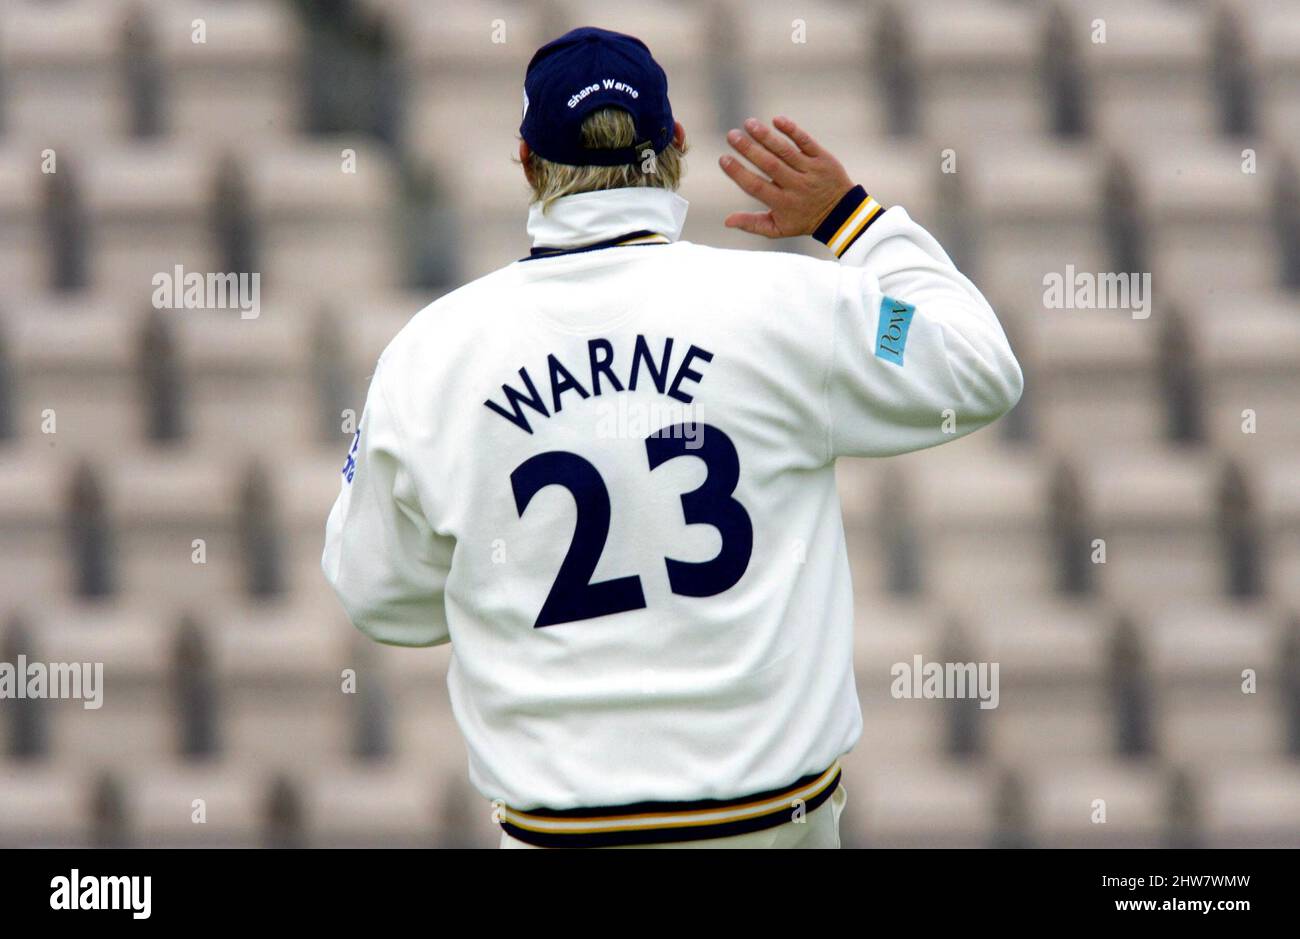 Foto del archivo fechada 03-05-2006 del capitán de Hampshire Shane Warne. Shane Warne, ex cricketer australiano, ha muerto a la edad de 52 años, anunció en un comunicado su empresa de gestión MPC Entertainment. Fecha de emisión: Viernes 4 de marzo de 2022. Foto de stock